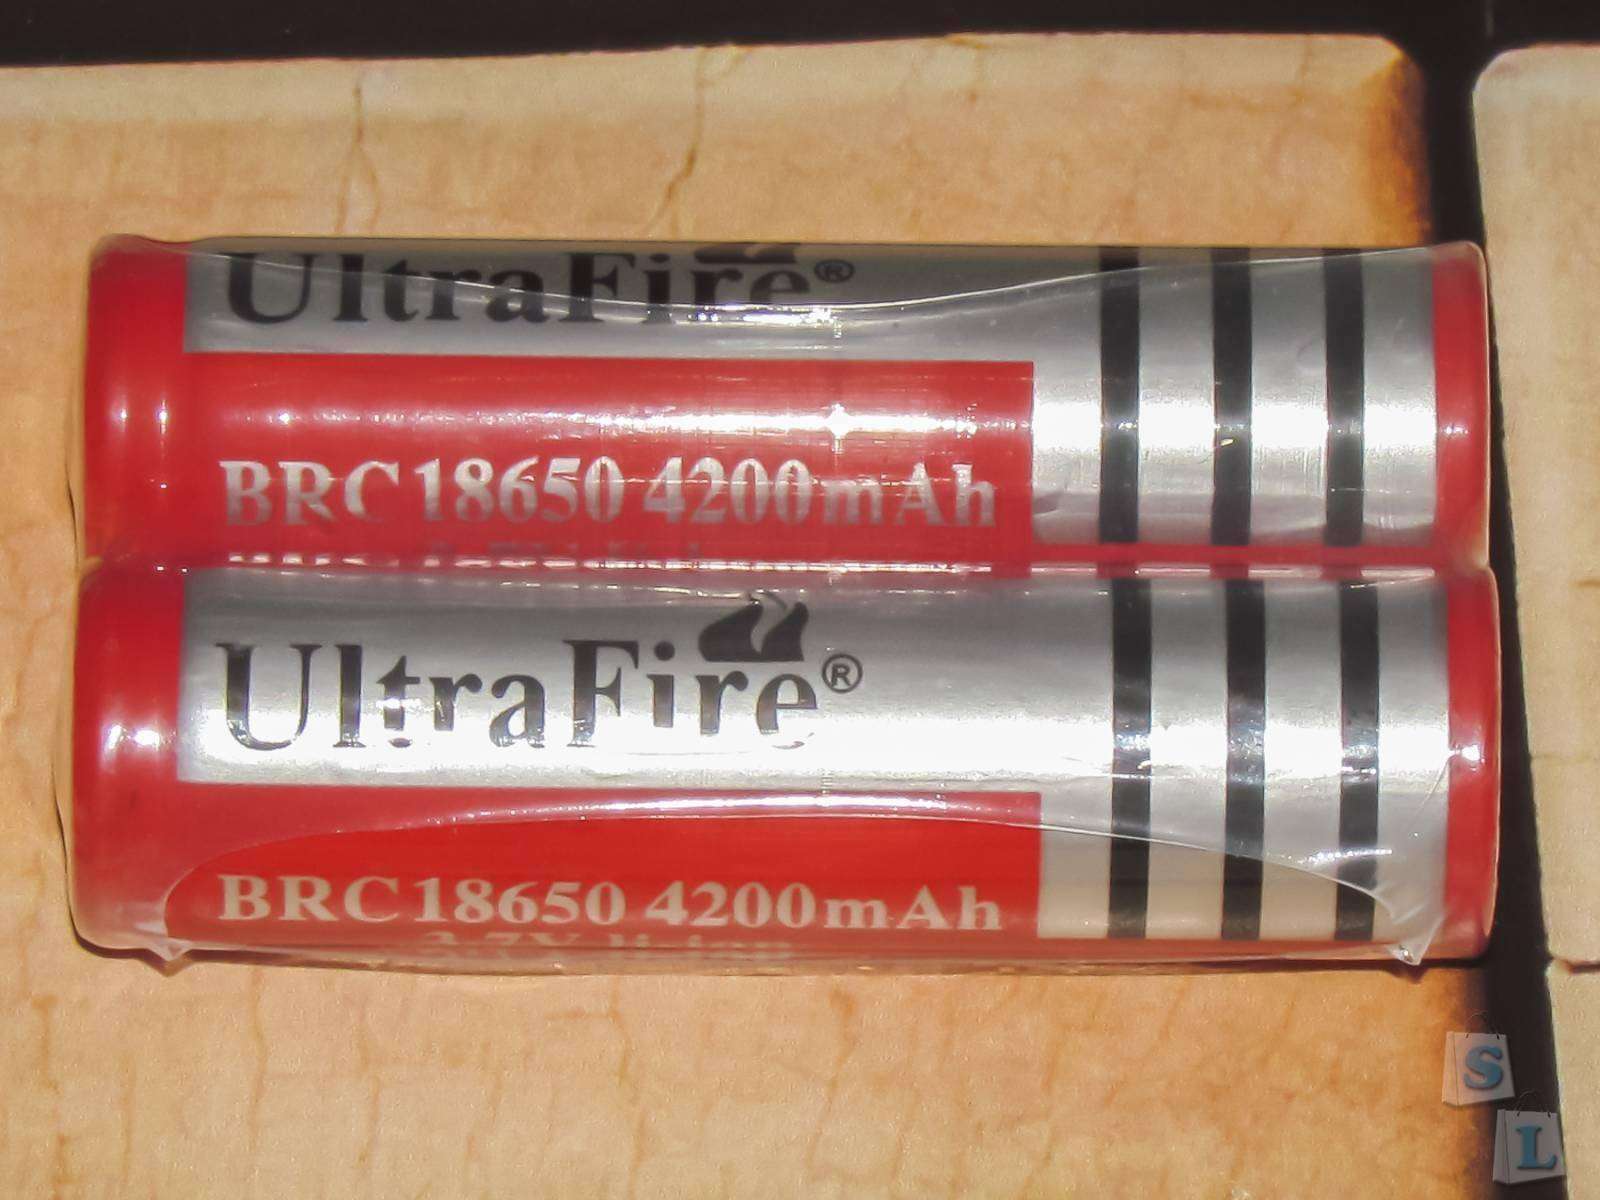 Aliexpress: Обзор и тестирование Li-ion аккумуляторов 18650 Ultrafire 4200 mAh - определение реальной емкости